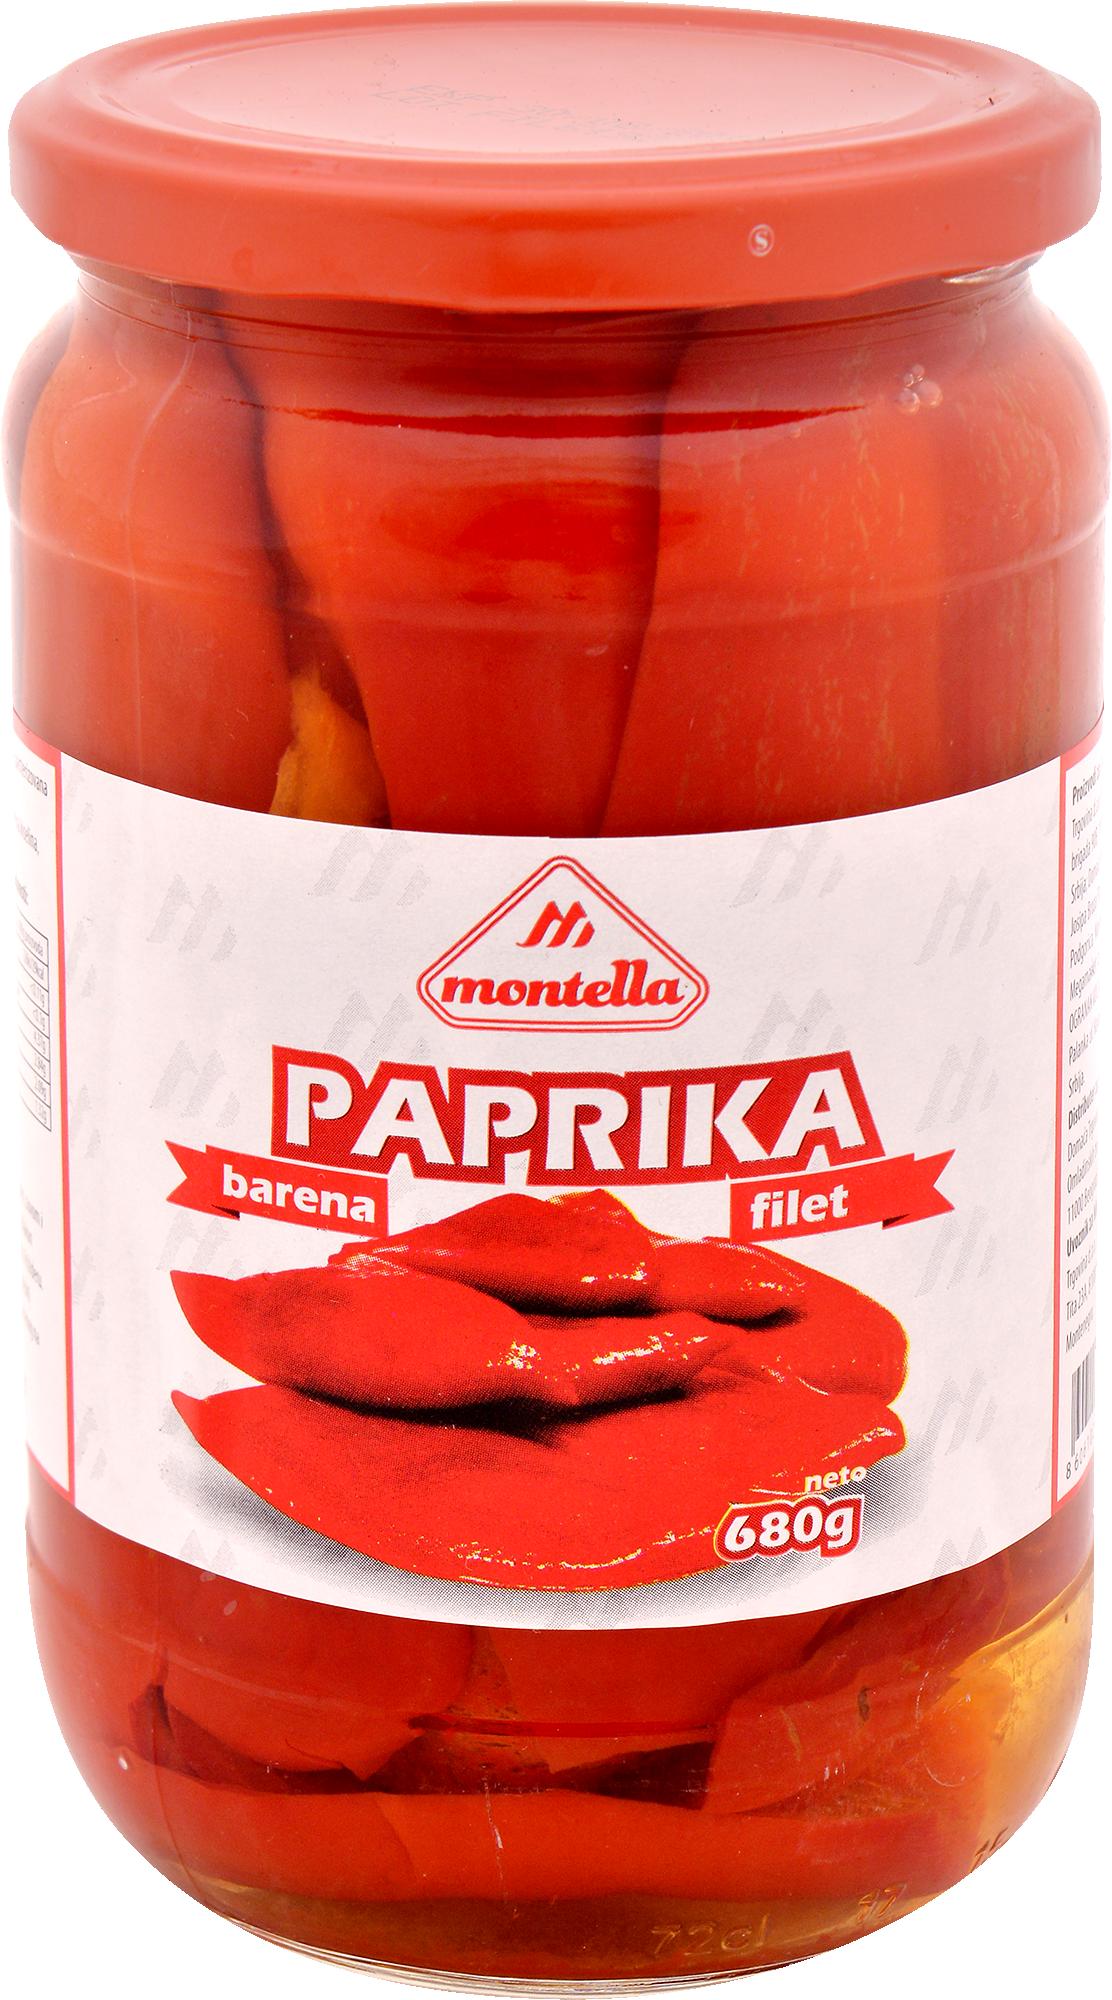 Slika za Paprika barena fileti Montella 680g